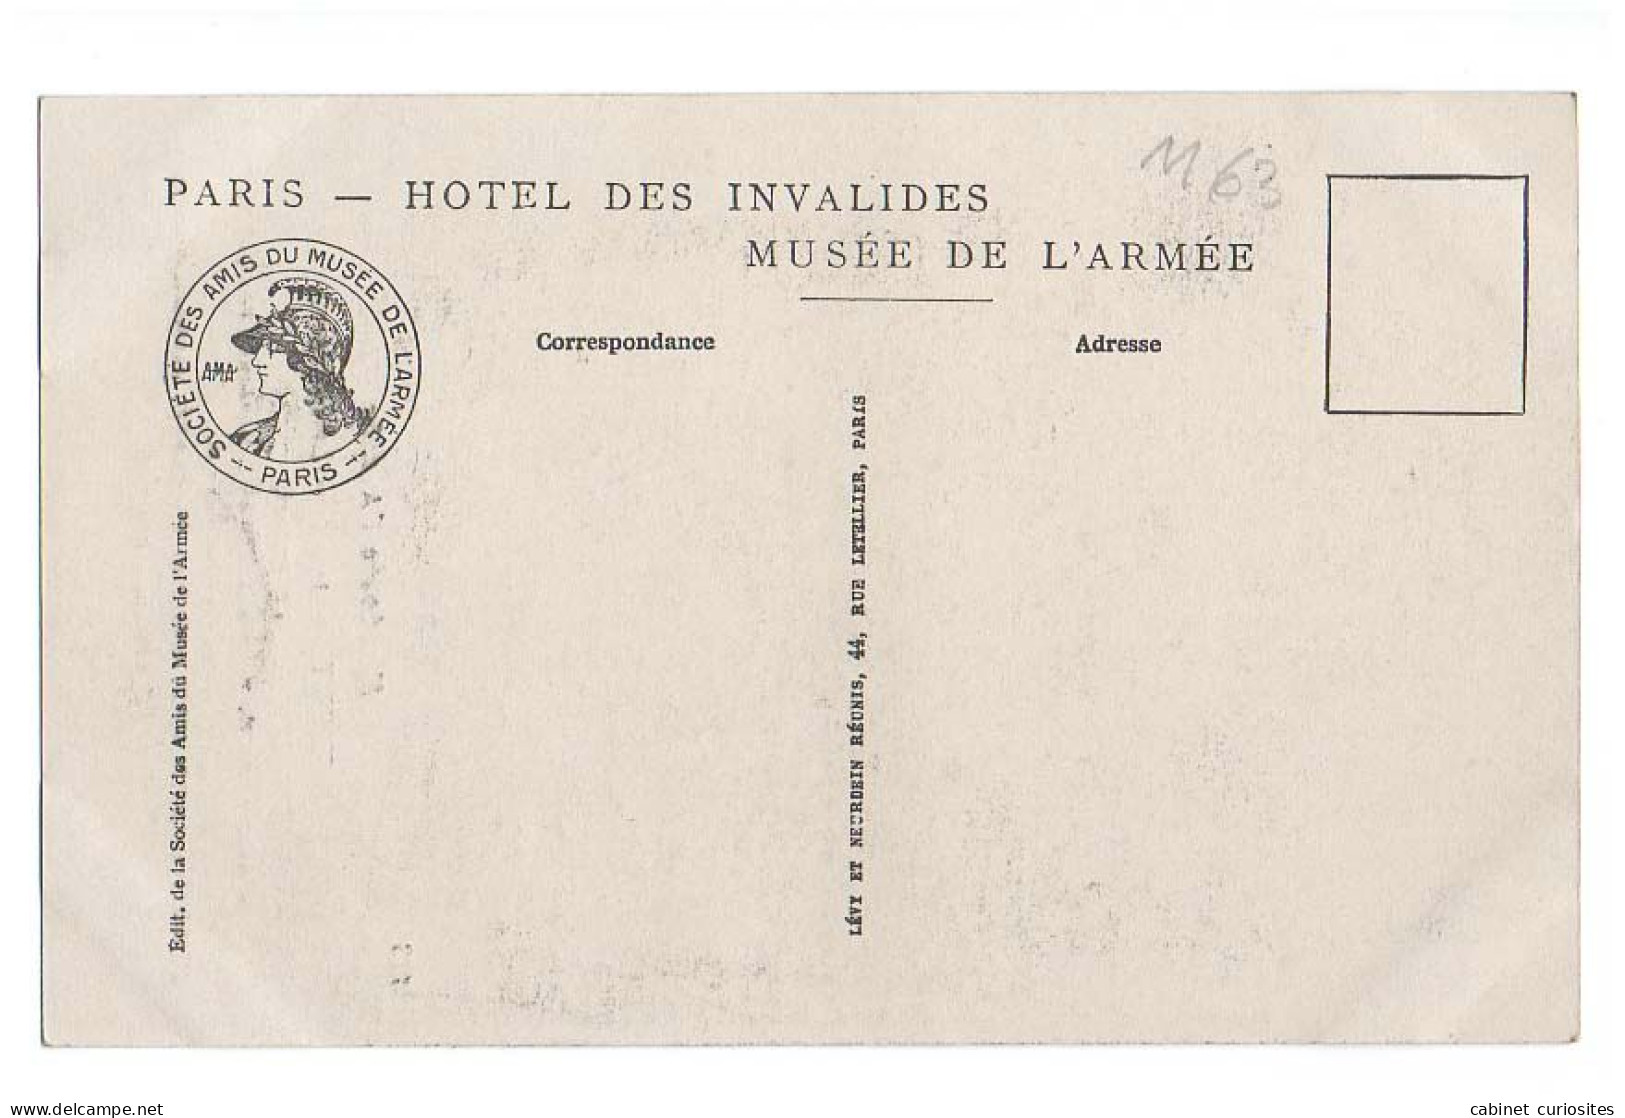 LIBÉRATEURS - Aubert 1918 - Le Poilu - Foch, Pétain, Fayolle, Clémenceau, De Castelnau, Poincaré, Galliéni, Joffre - Personnages